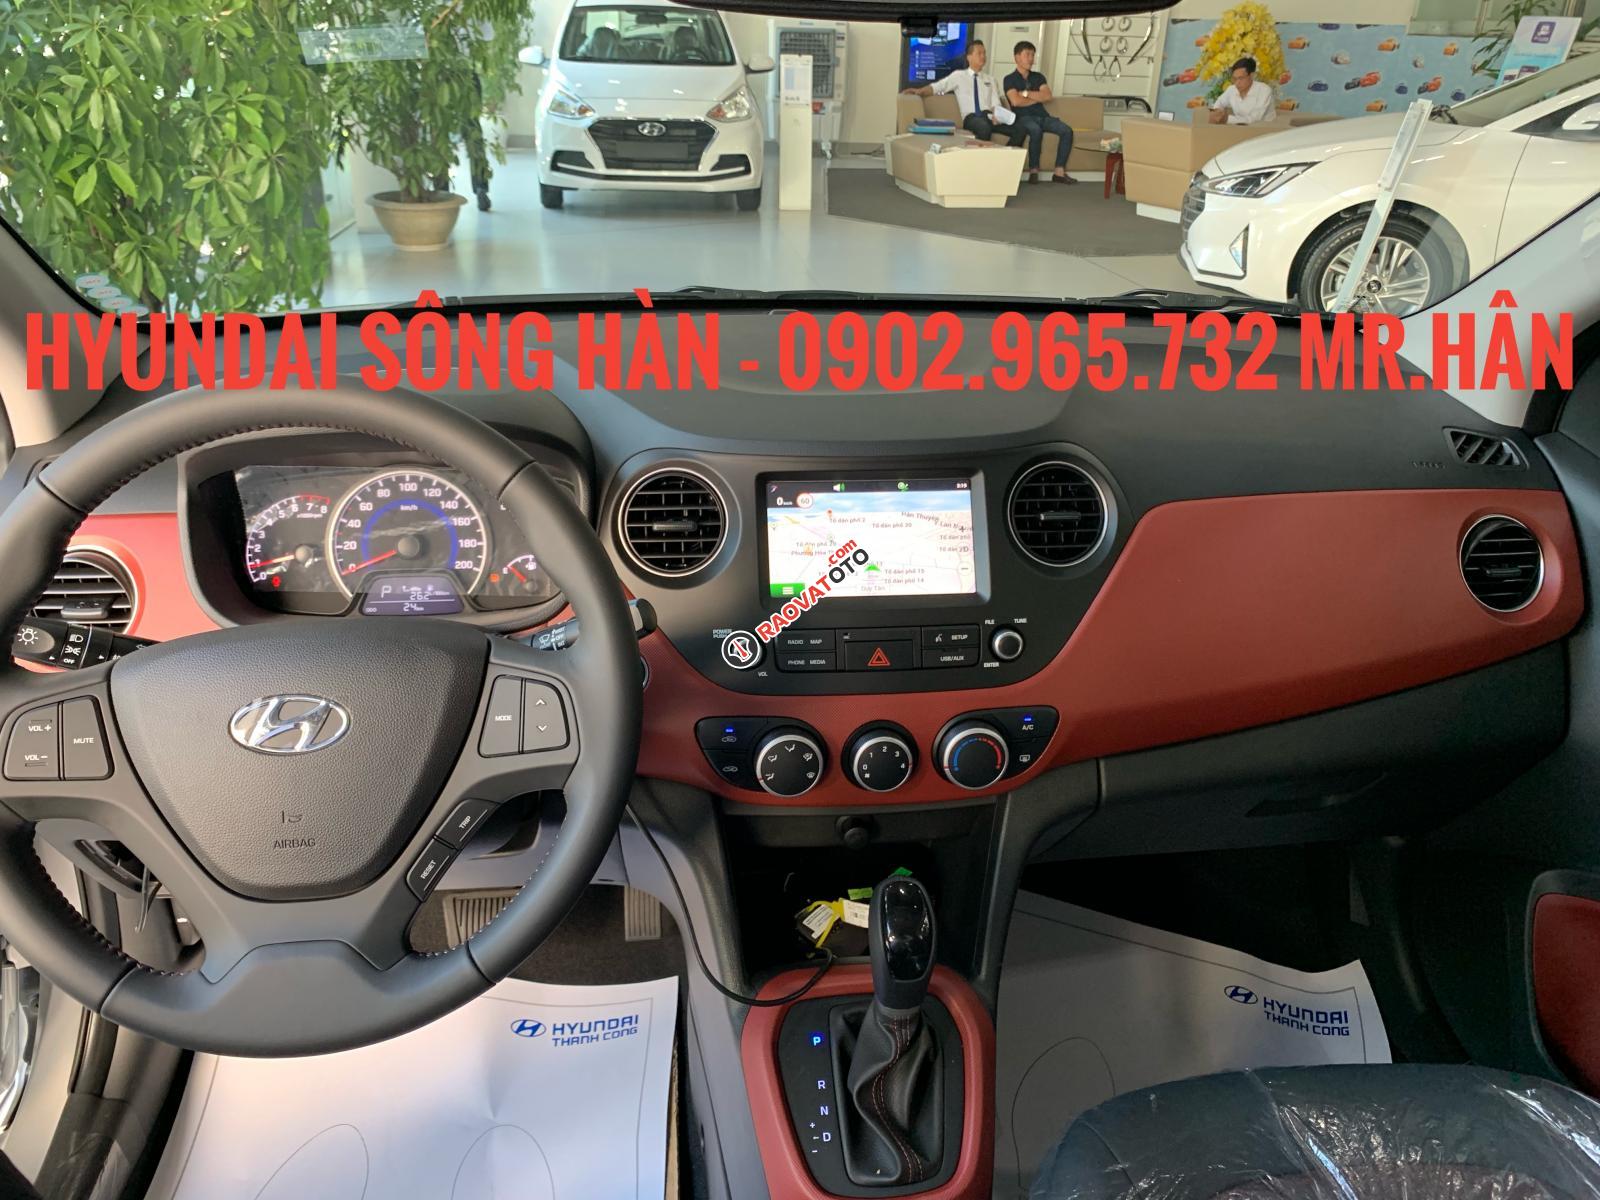 Bán xe Hyundai Grand i10 2019, màu đỏ, giá tốt nhất Đà Nẵng, chỉ cần 150 triệu để nhận xe, LH: 0902.965.732 Hữu Hân-0